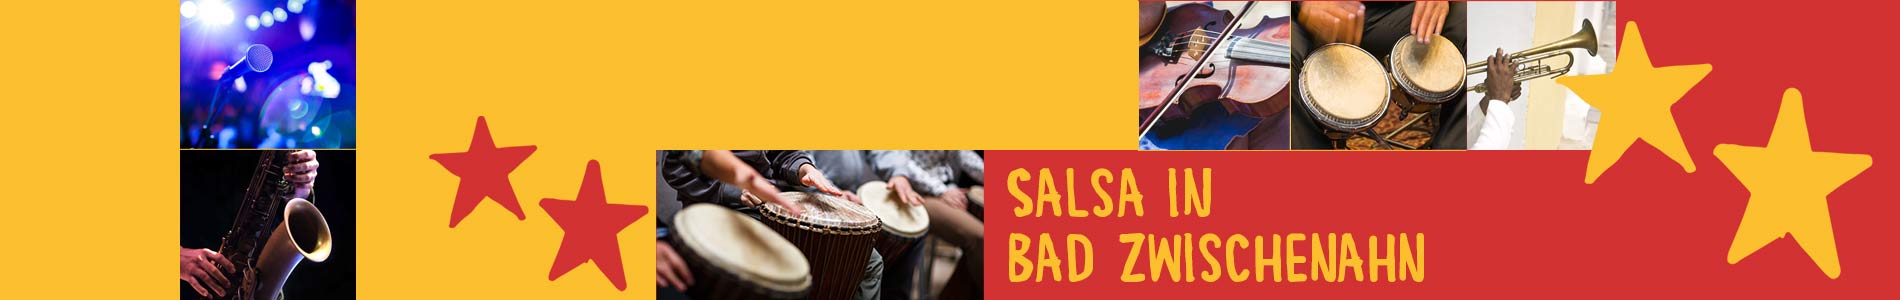 Salsa in Bad Zwischenahn – Salsa lernen und tanzen, Tanzkurse, Partys, Veranstaltungen